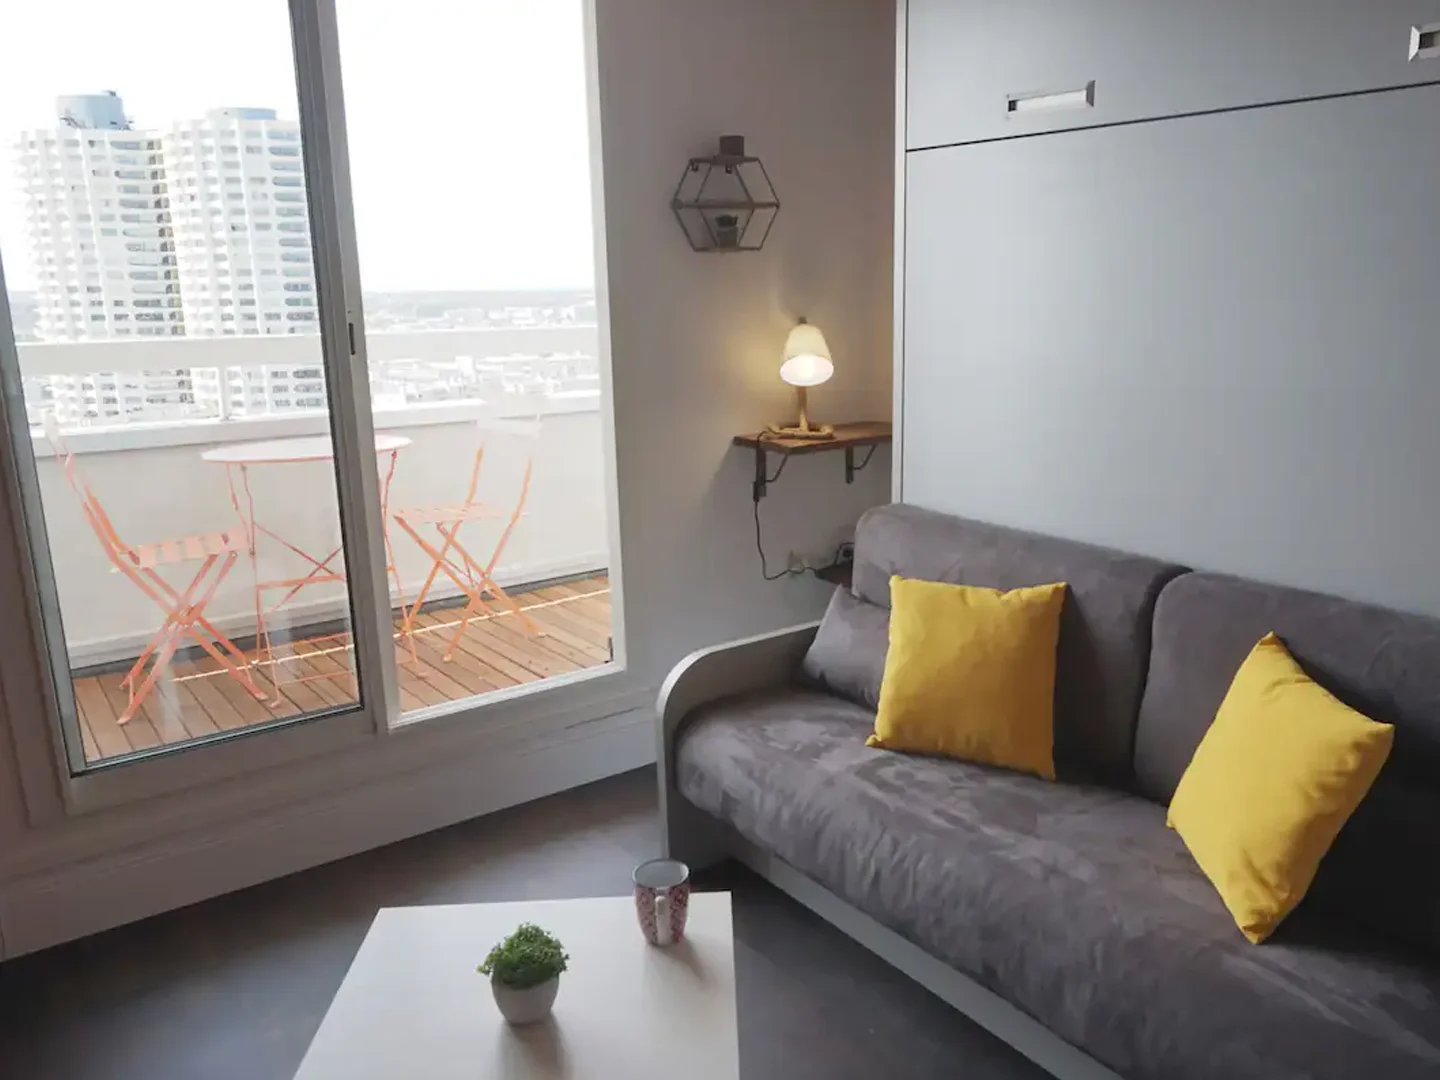 rennes-host-airbnb-conciergerie-l-horizon-studio-bas-des-lices-2